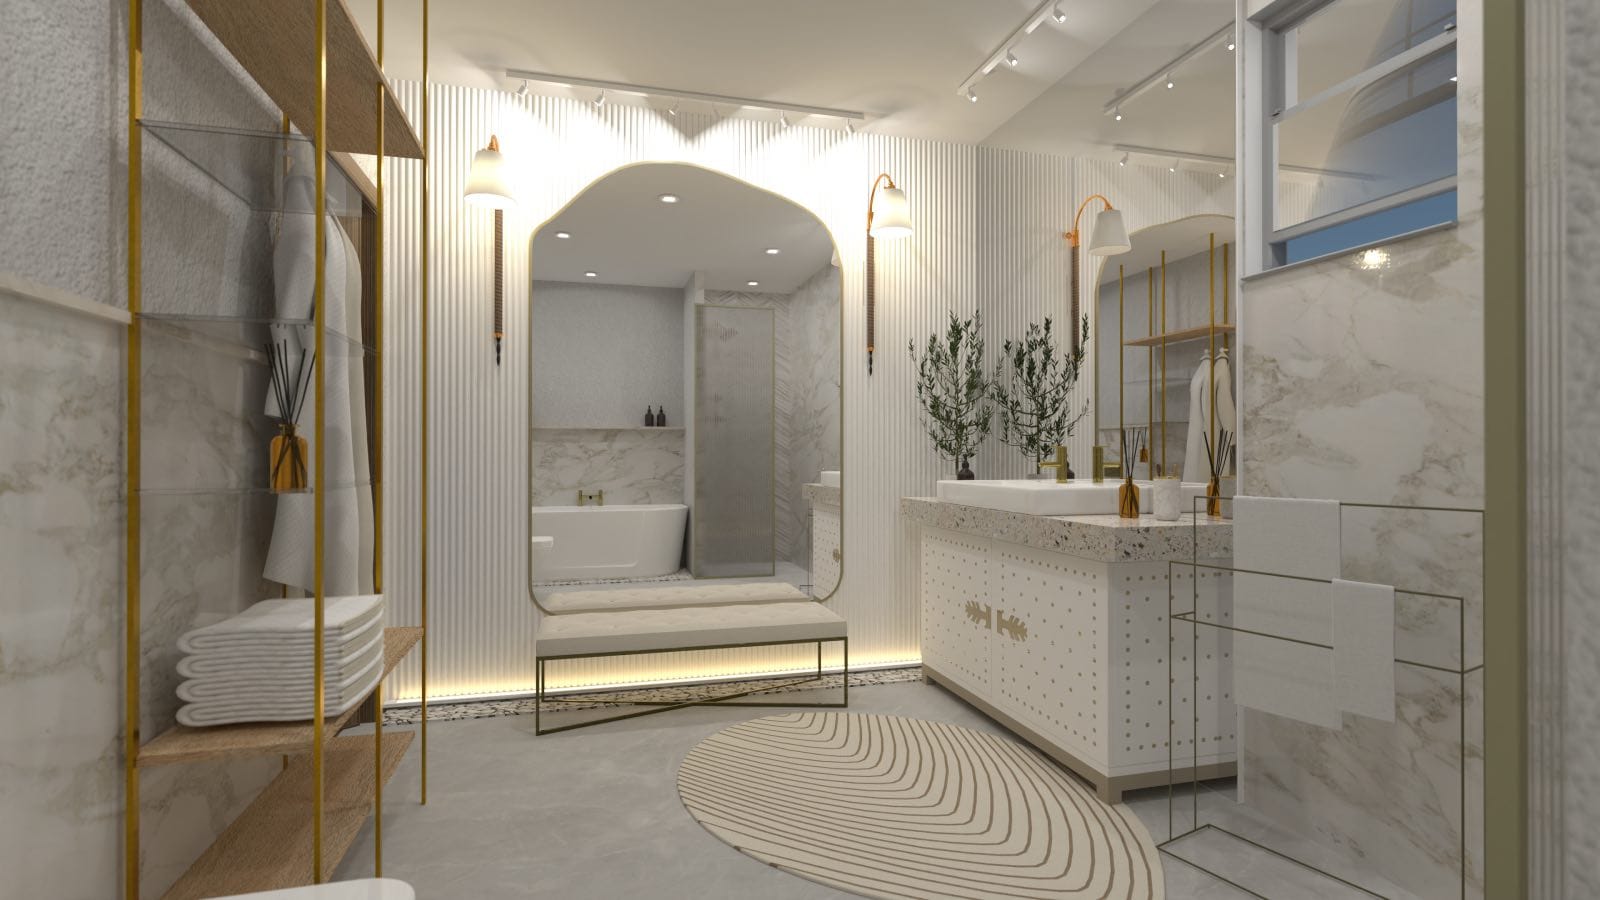 baño de lujo luminoso mármol y dorado, render 3d con planer 5d